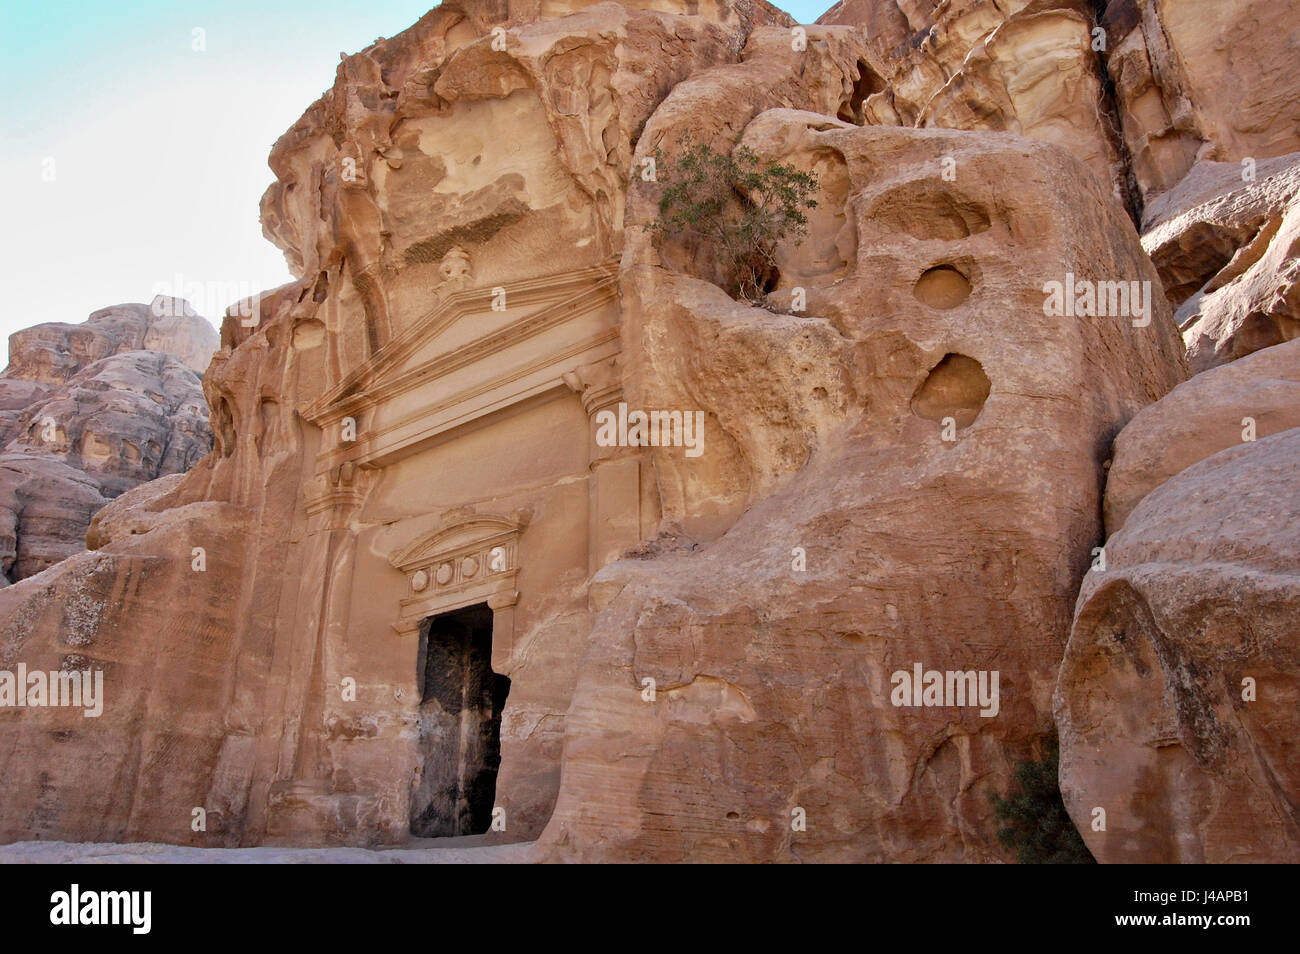 Jordania petra hi-res stock photography and images - Alamy